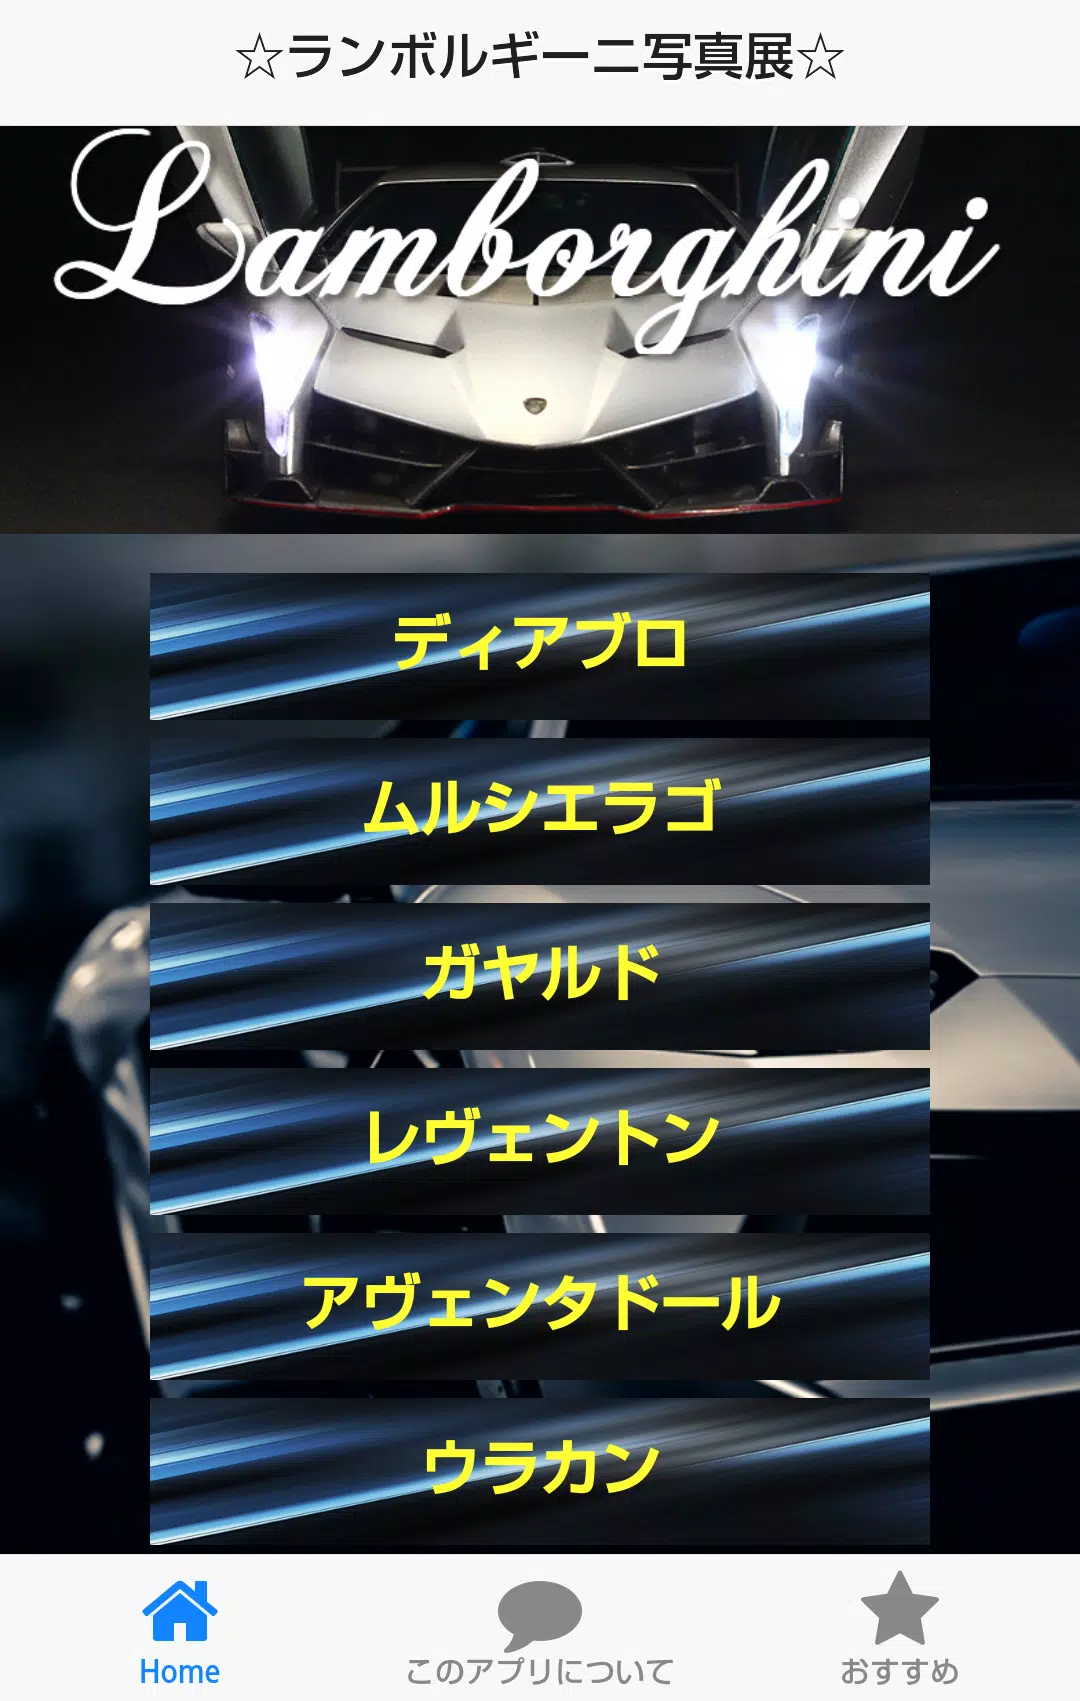 高級車の壁紙集forランボルギーニ Lamborghini Apk Untuk Unduhan Android